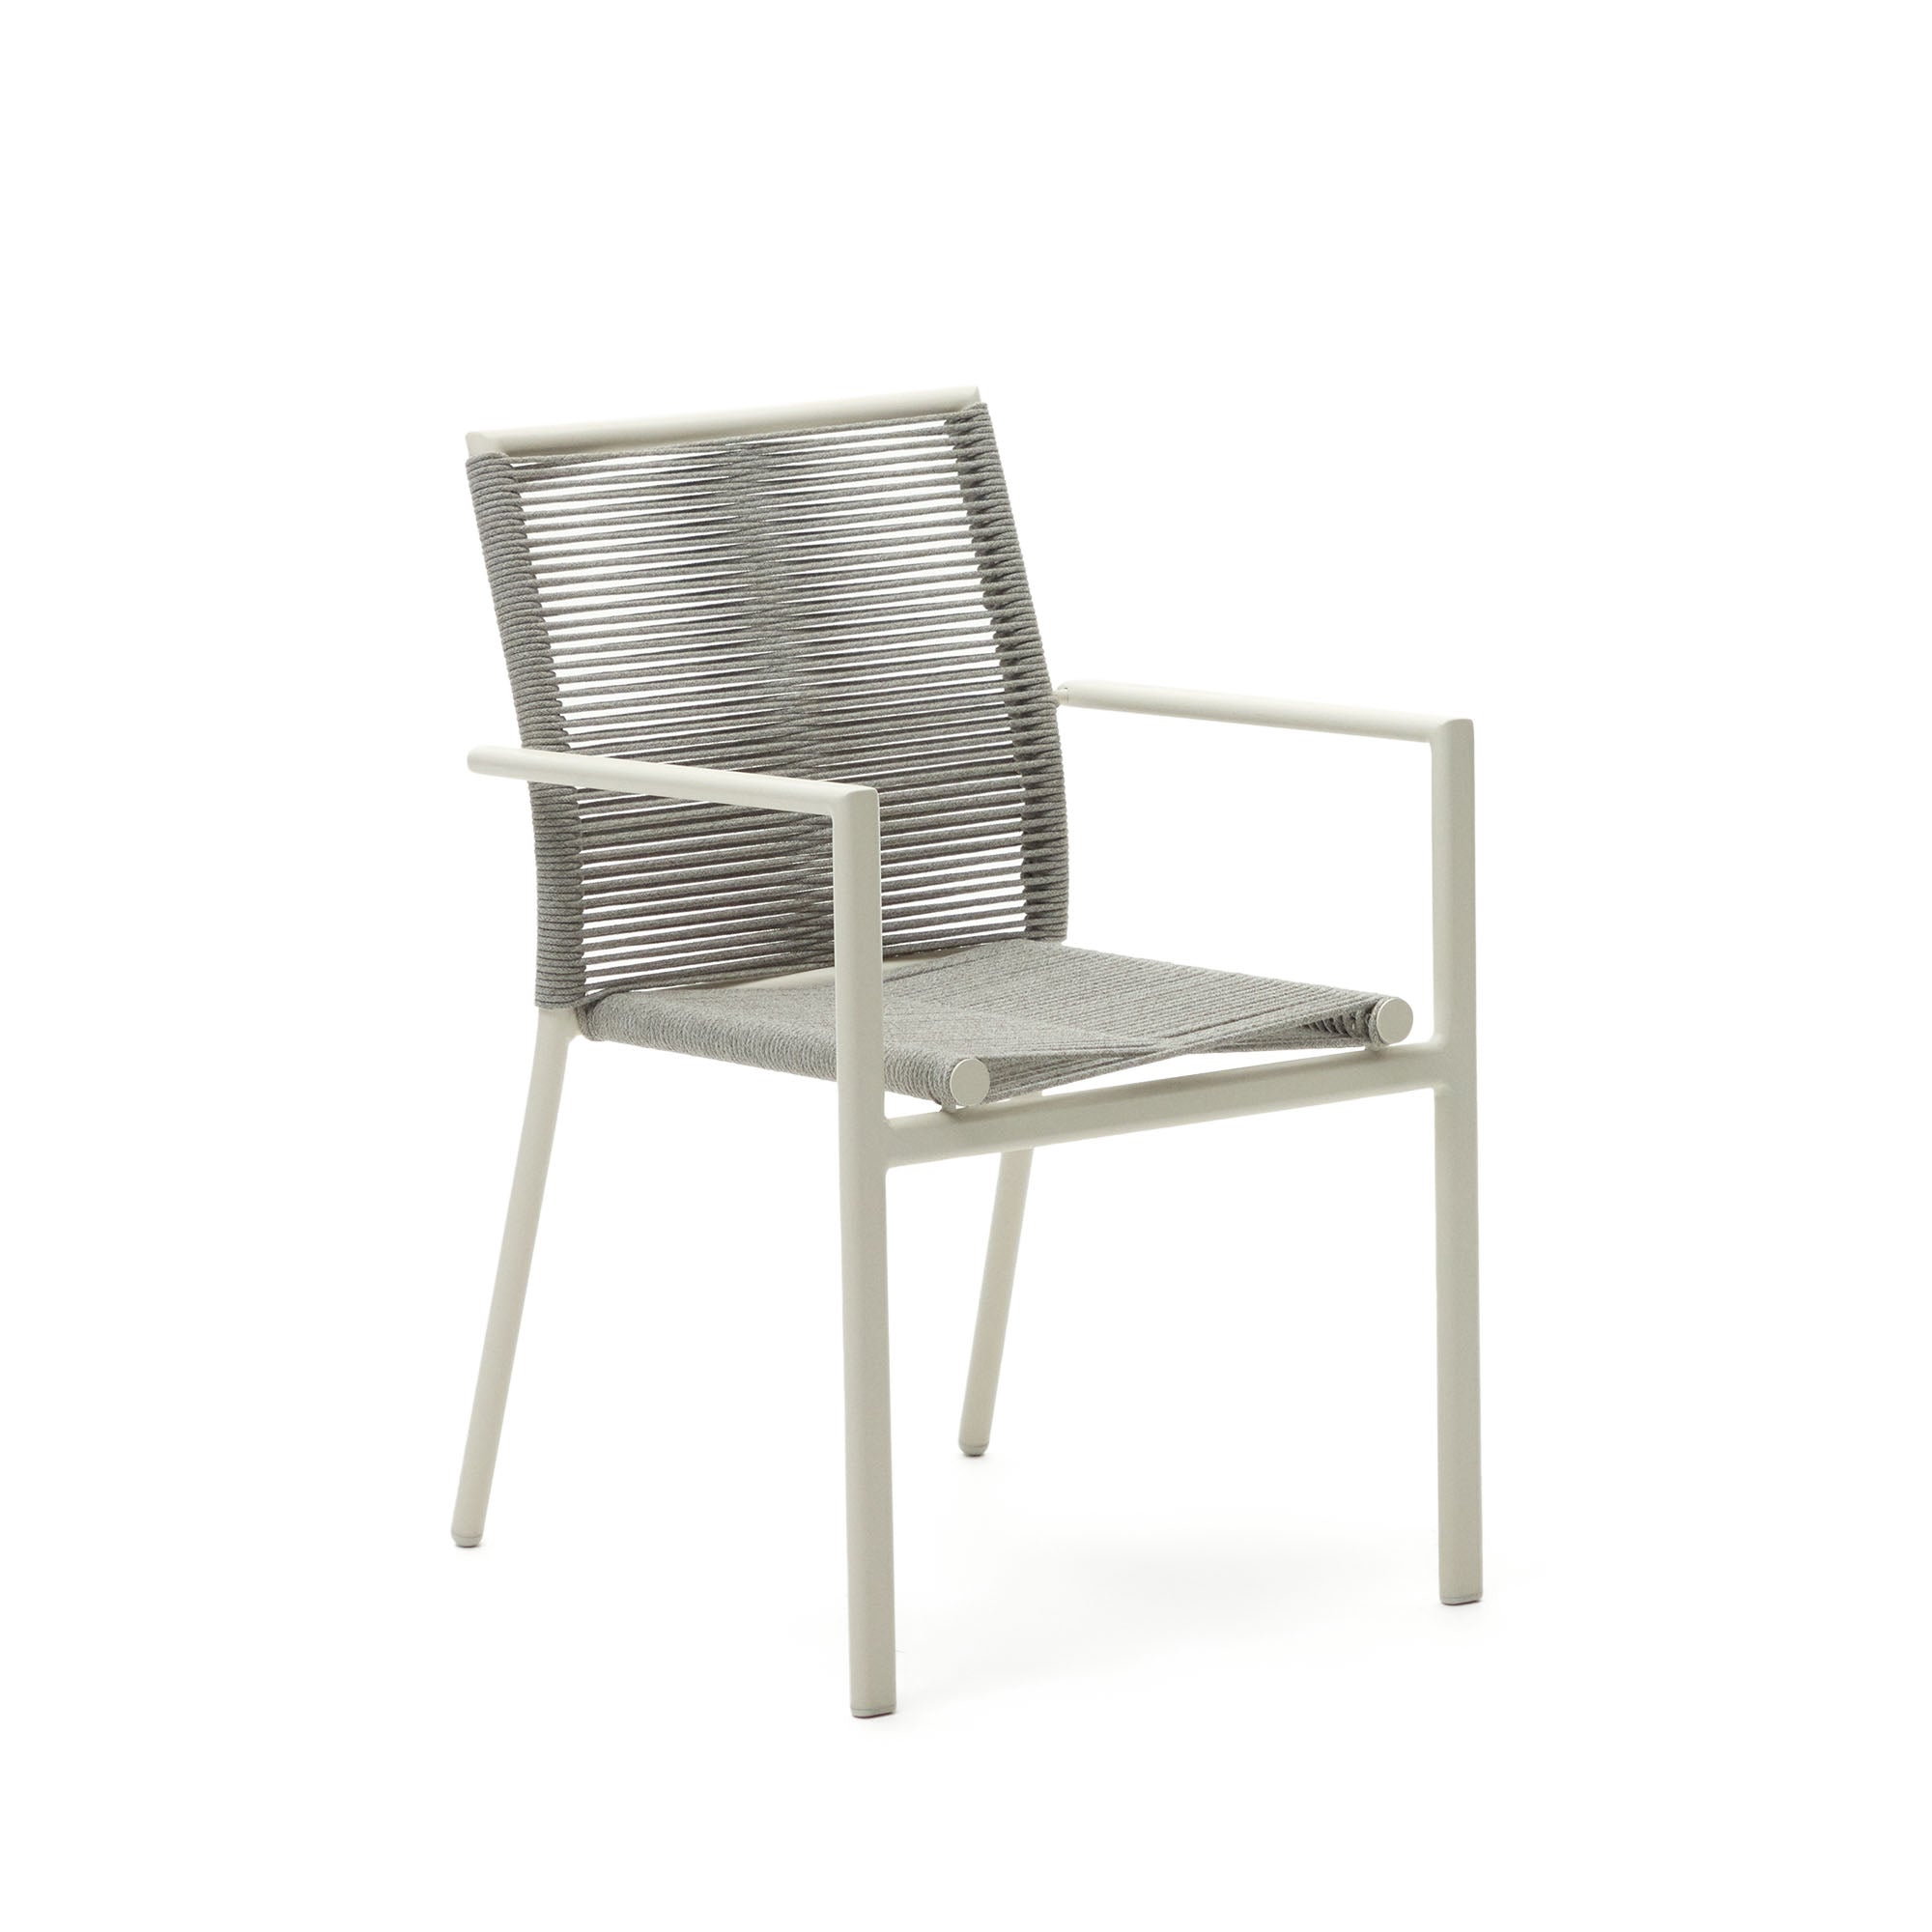 Culip alumíniumból és zsinórból készült, egymásba rakható kültéri szék fehér színben